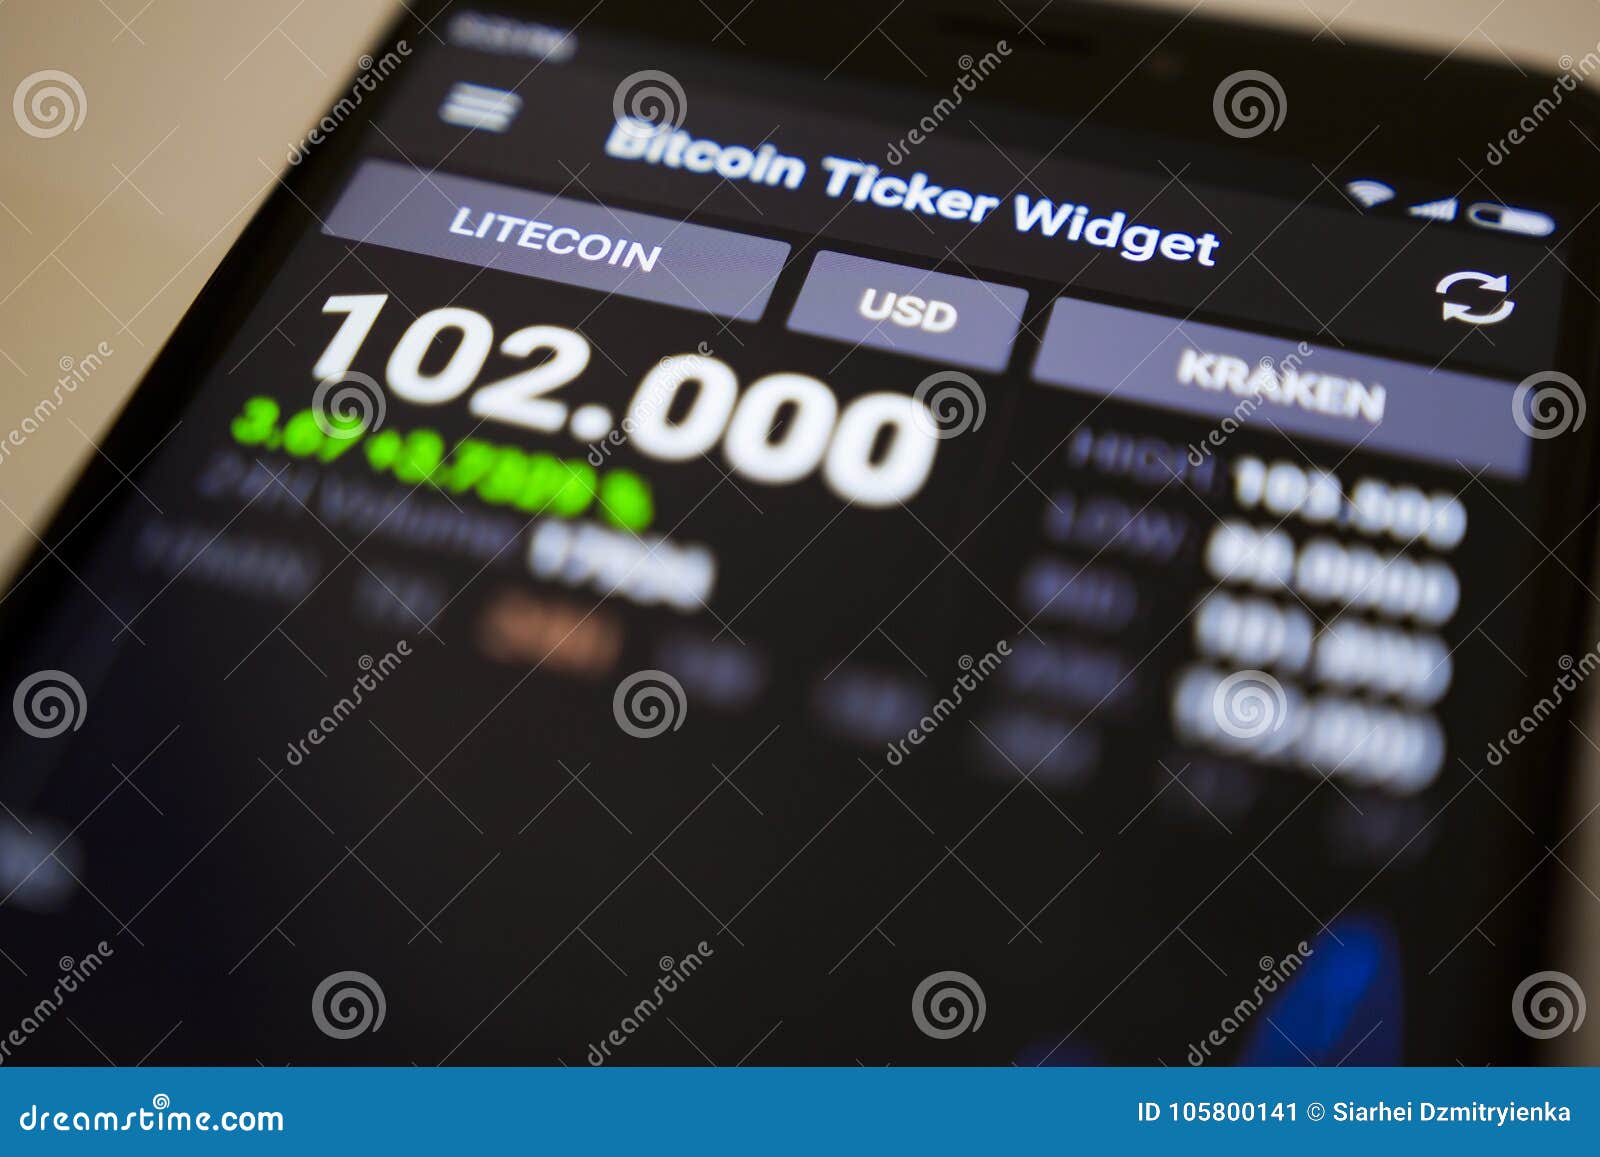 litecoin price ticker widget